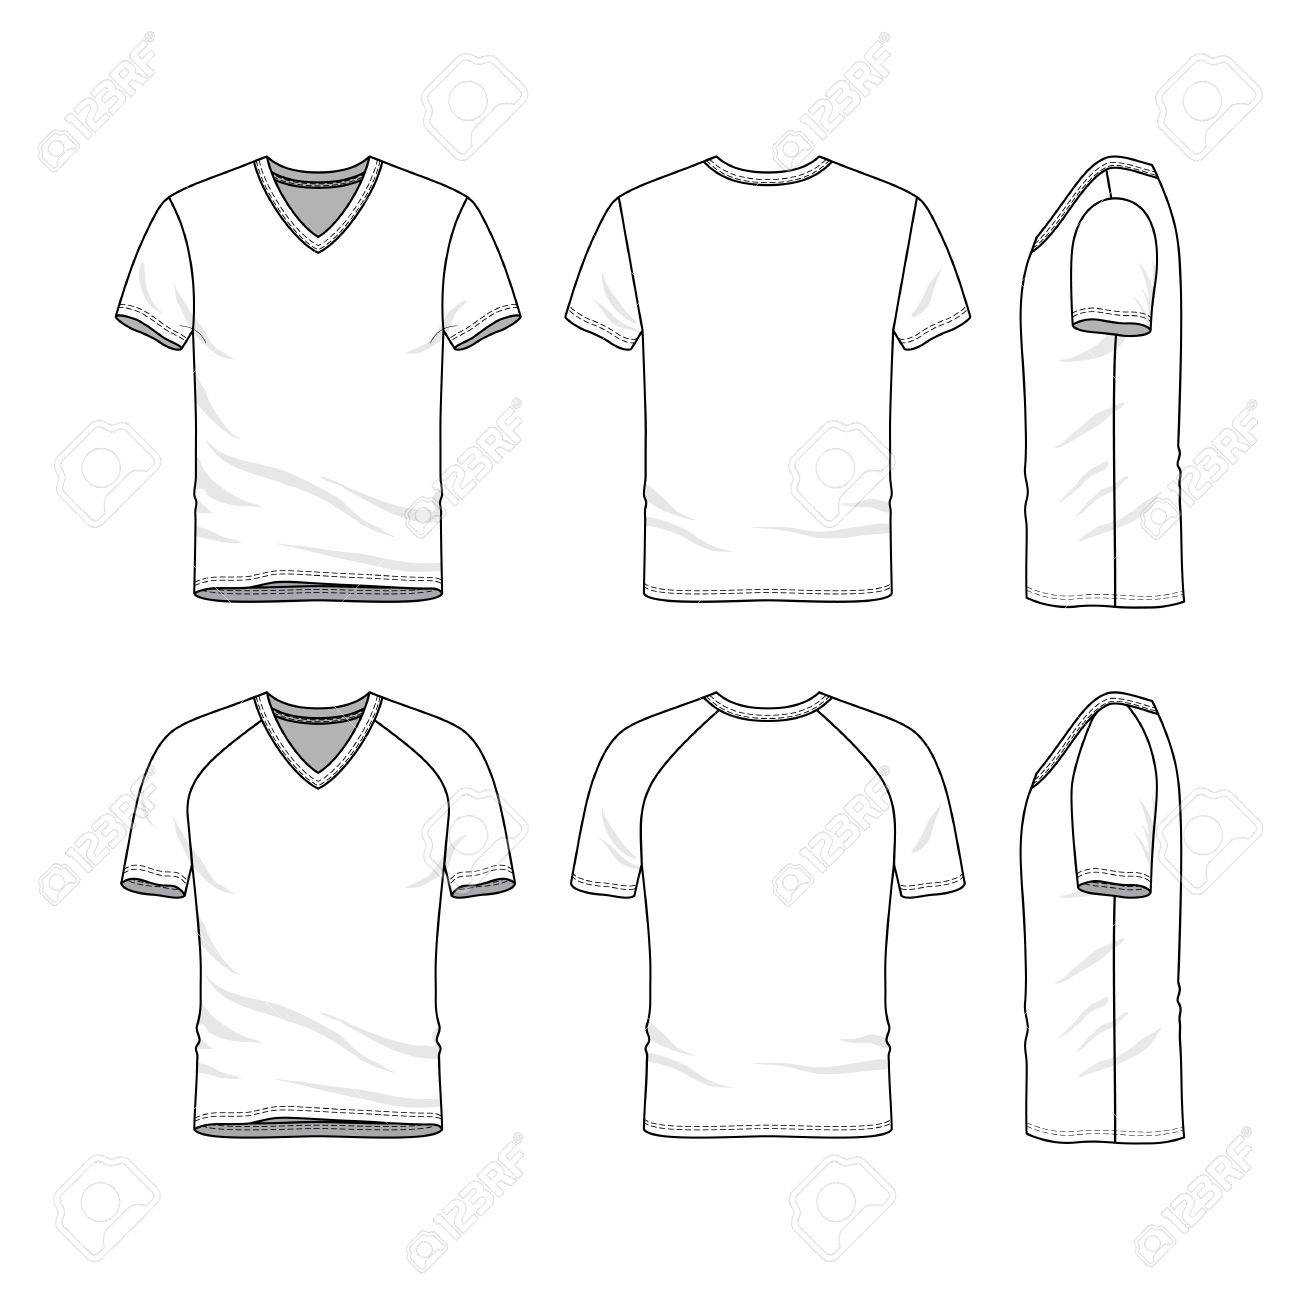 Stock Illustration In Blank V Neck T Shirt Template